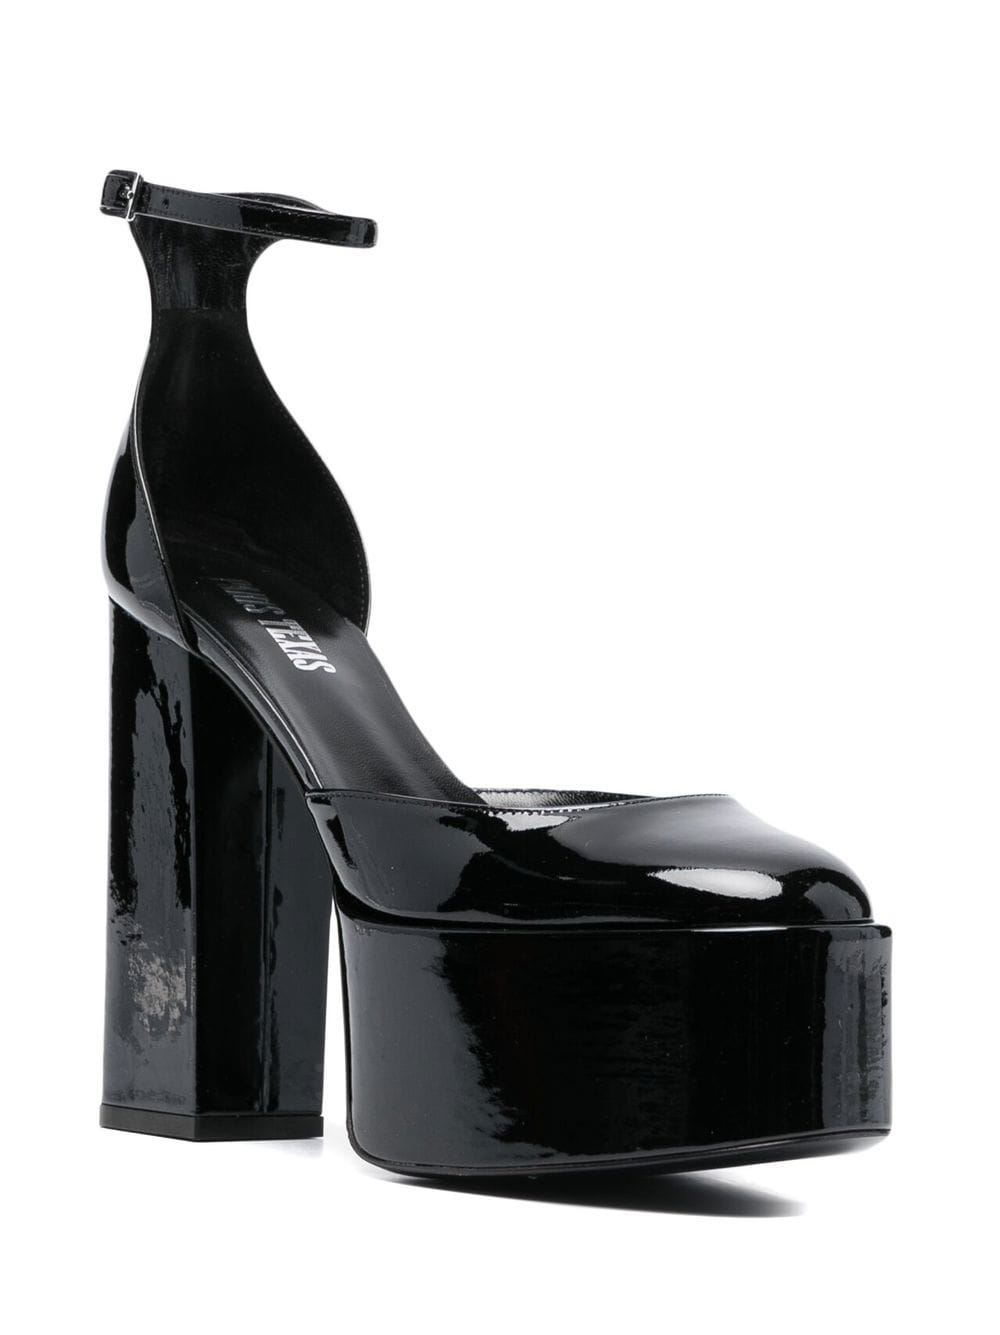 PARIS TEXAS PARIS TEXAS- Dalilah Patent Leather Platform Sandals